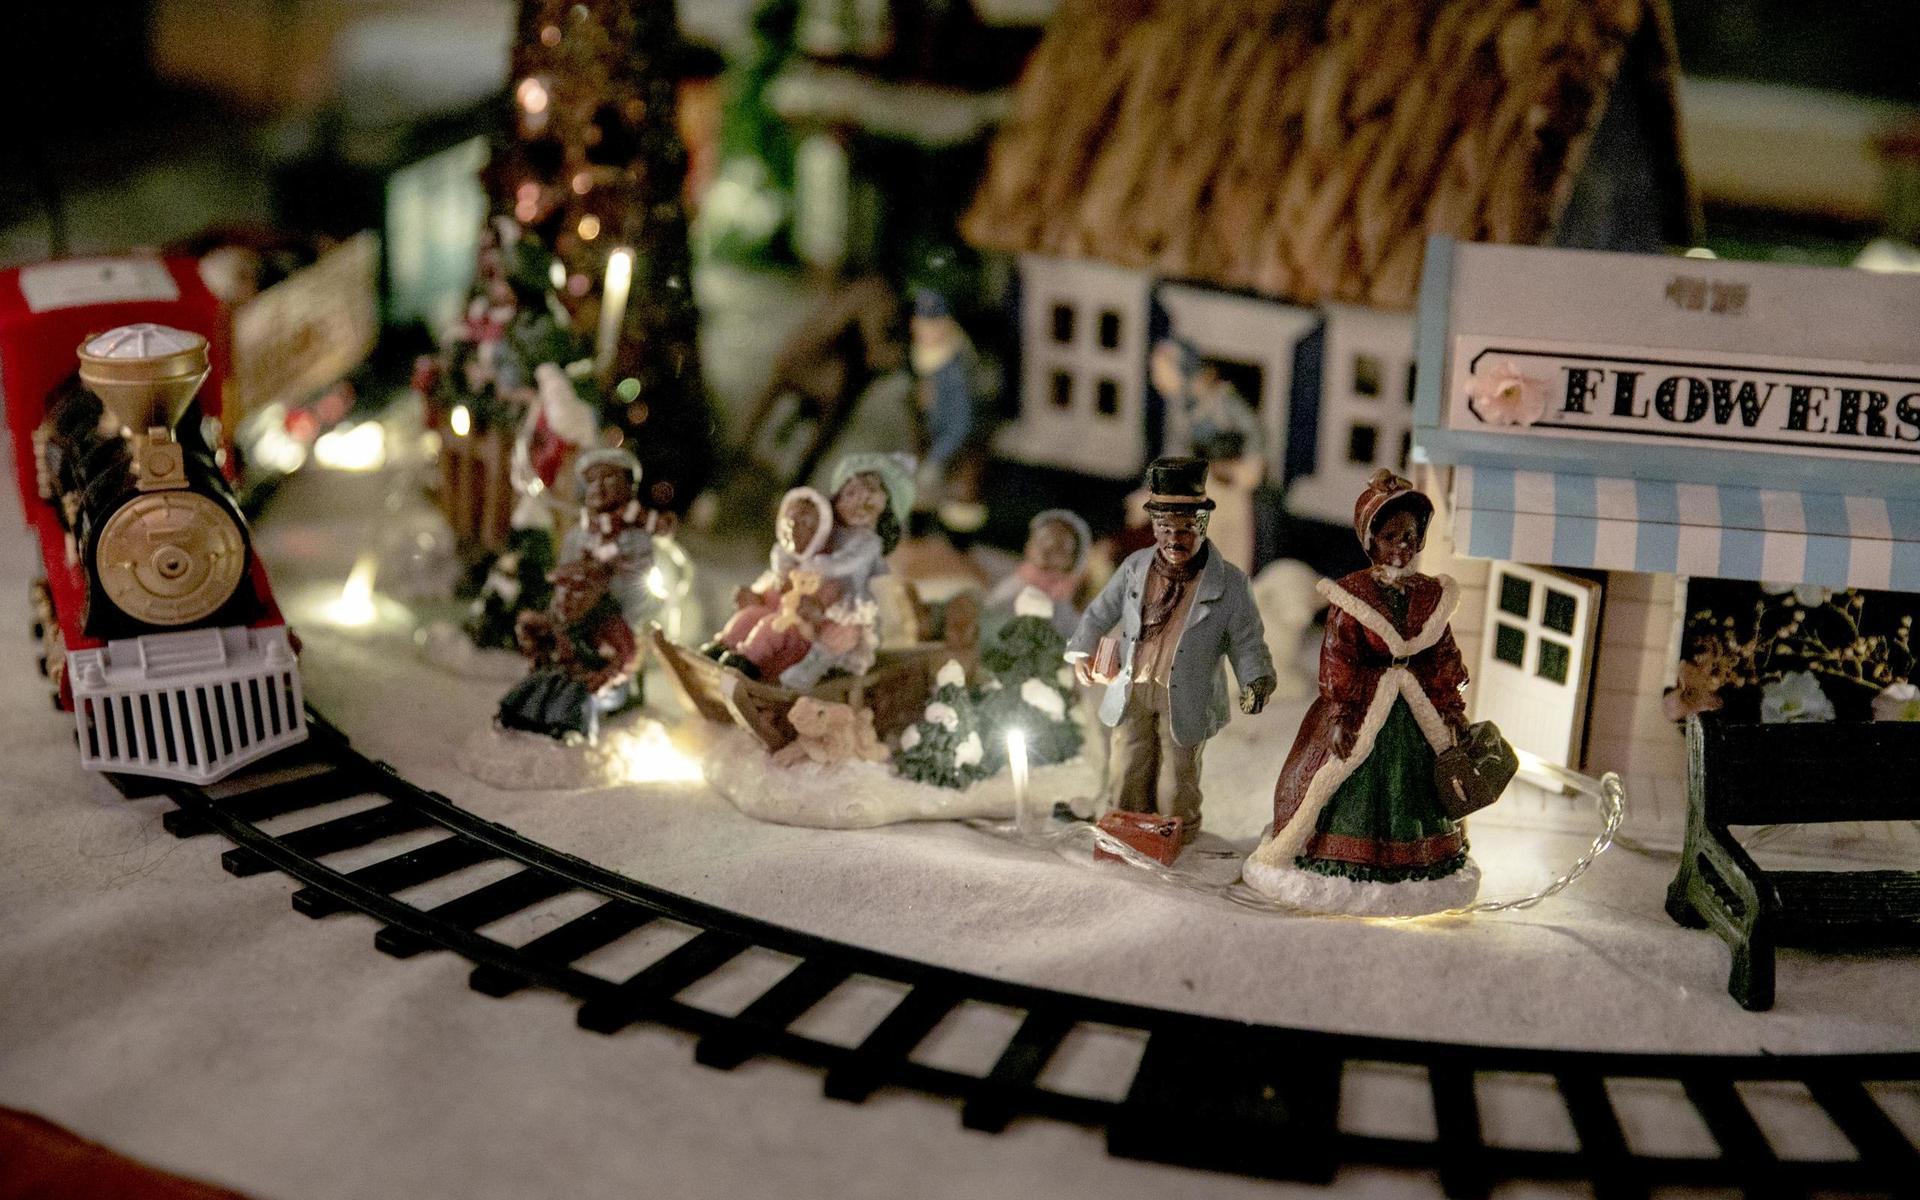 I sin lägenhet i Landala hade Sandy och Christer Lindstedt byggt upp en julstad i miniatyr till julen 2018. Sandy flyttade till Sverige från USA för sju år sedan och tog med sig sina jultraditioner.